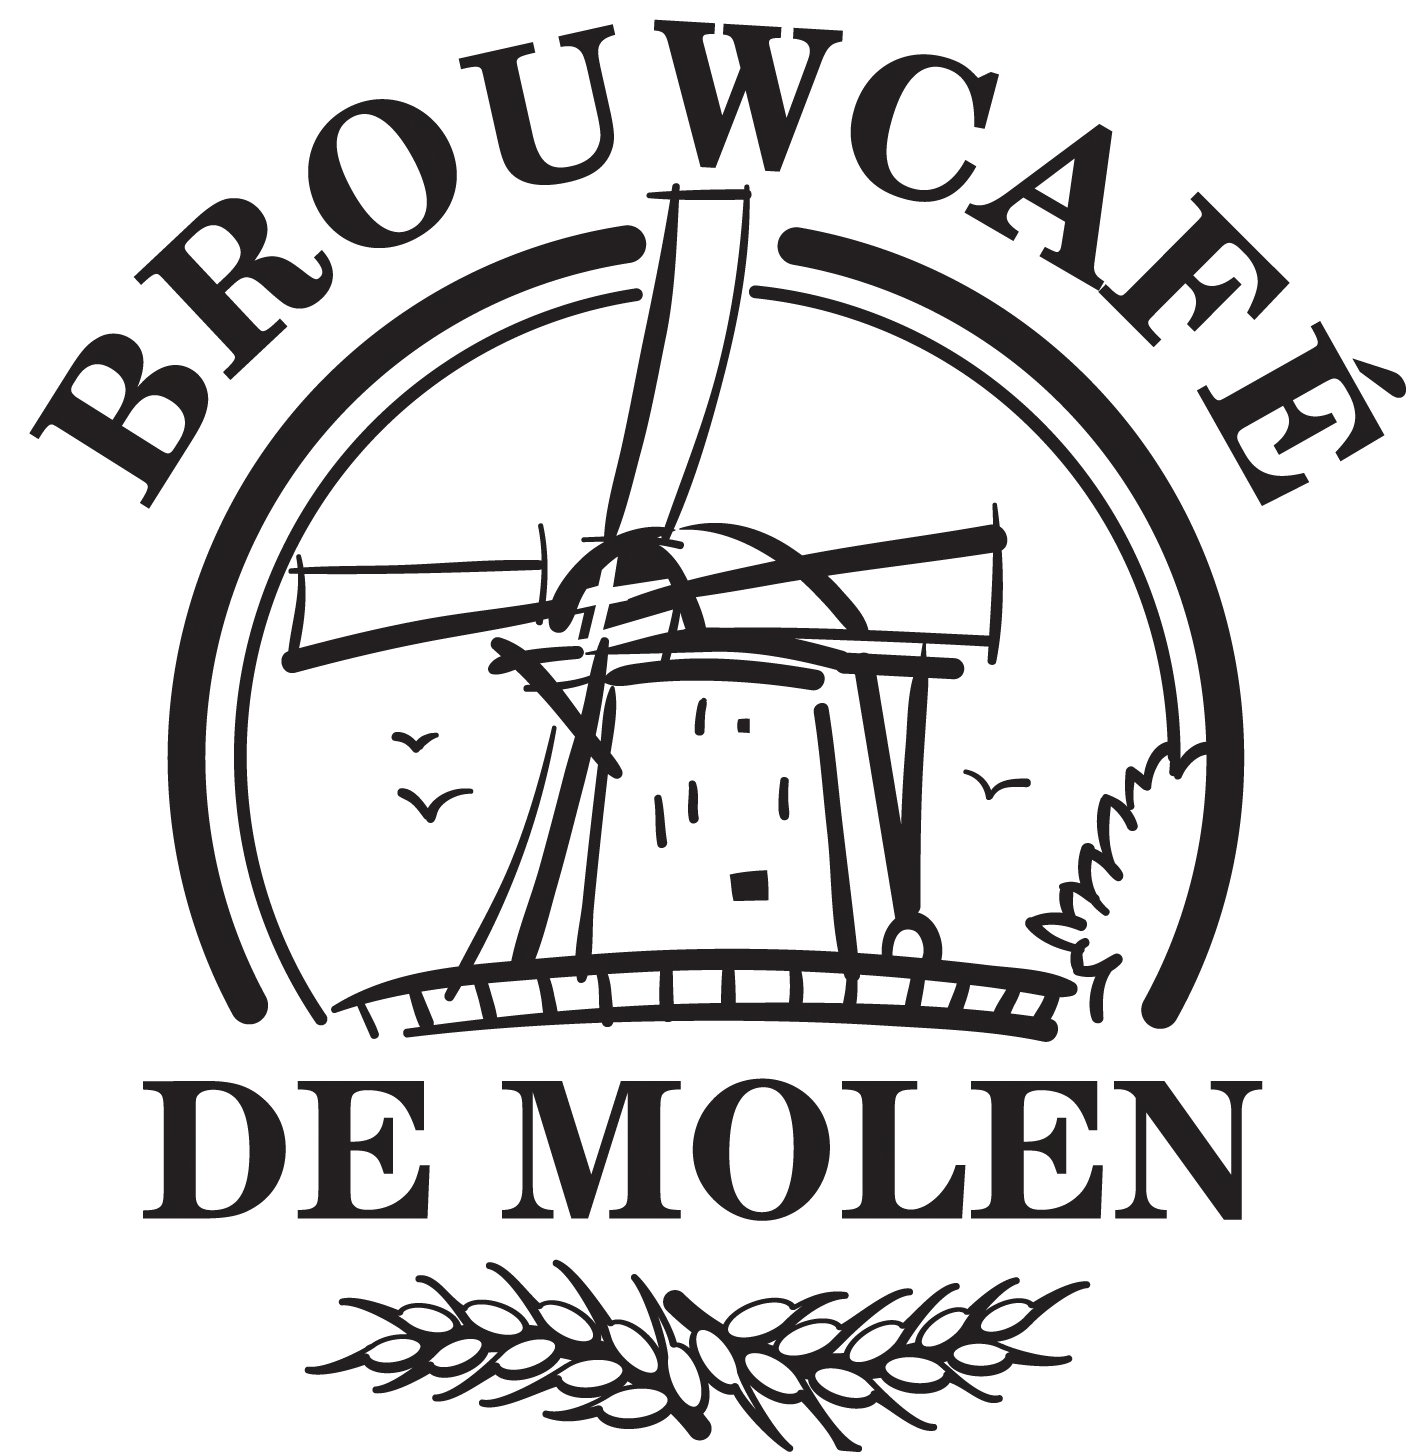 Brouwerij de Molen | Mindblowing craft beer